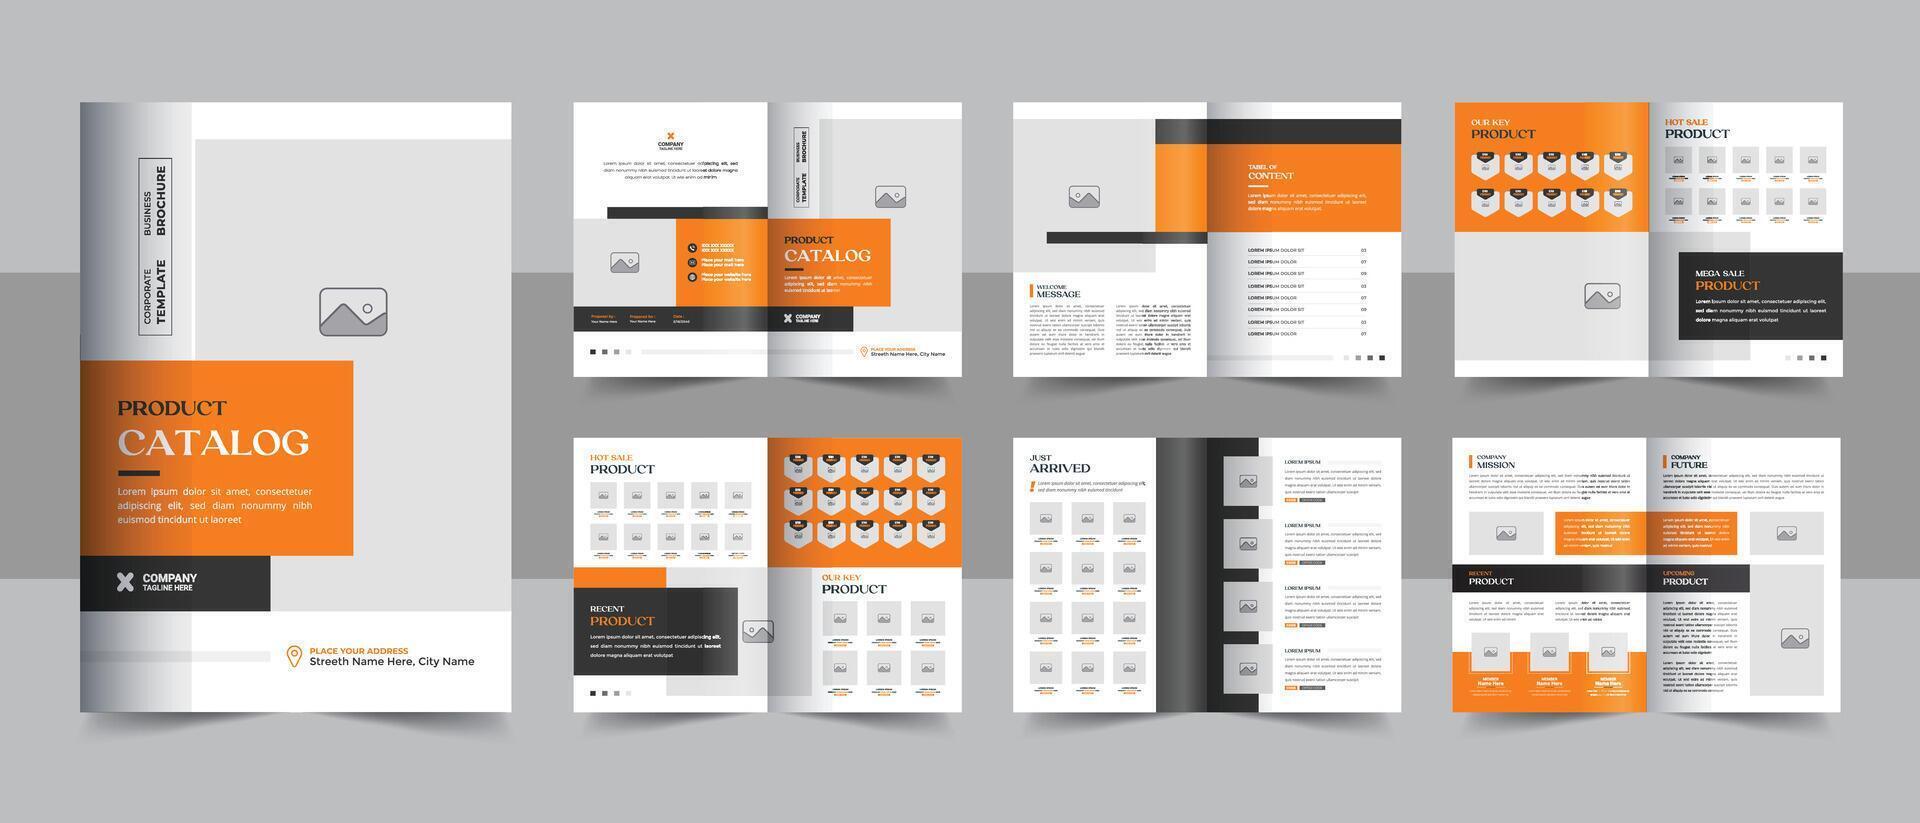 diseño de catálogo de productos de empresa a4 moderno, diseño de plantilla de folleto de producto minimalista vector